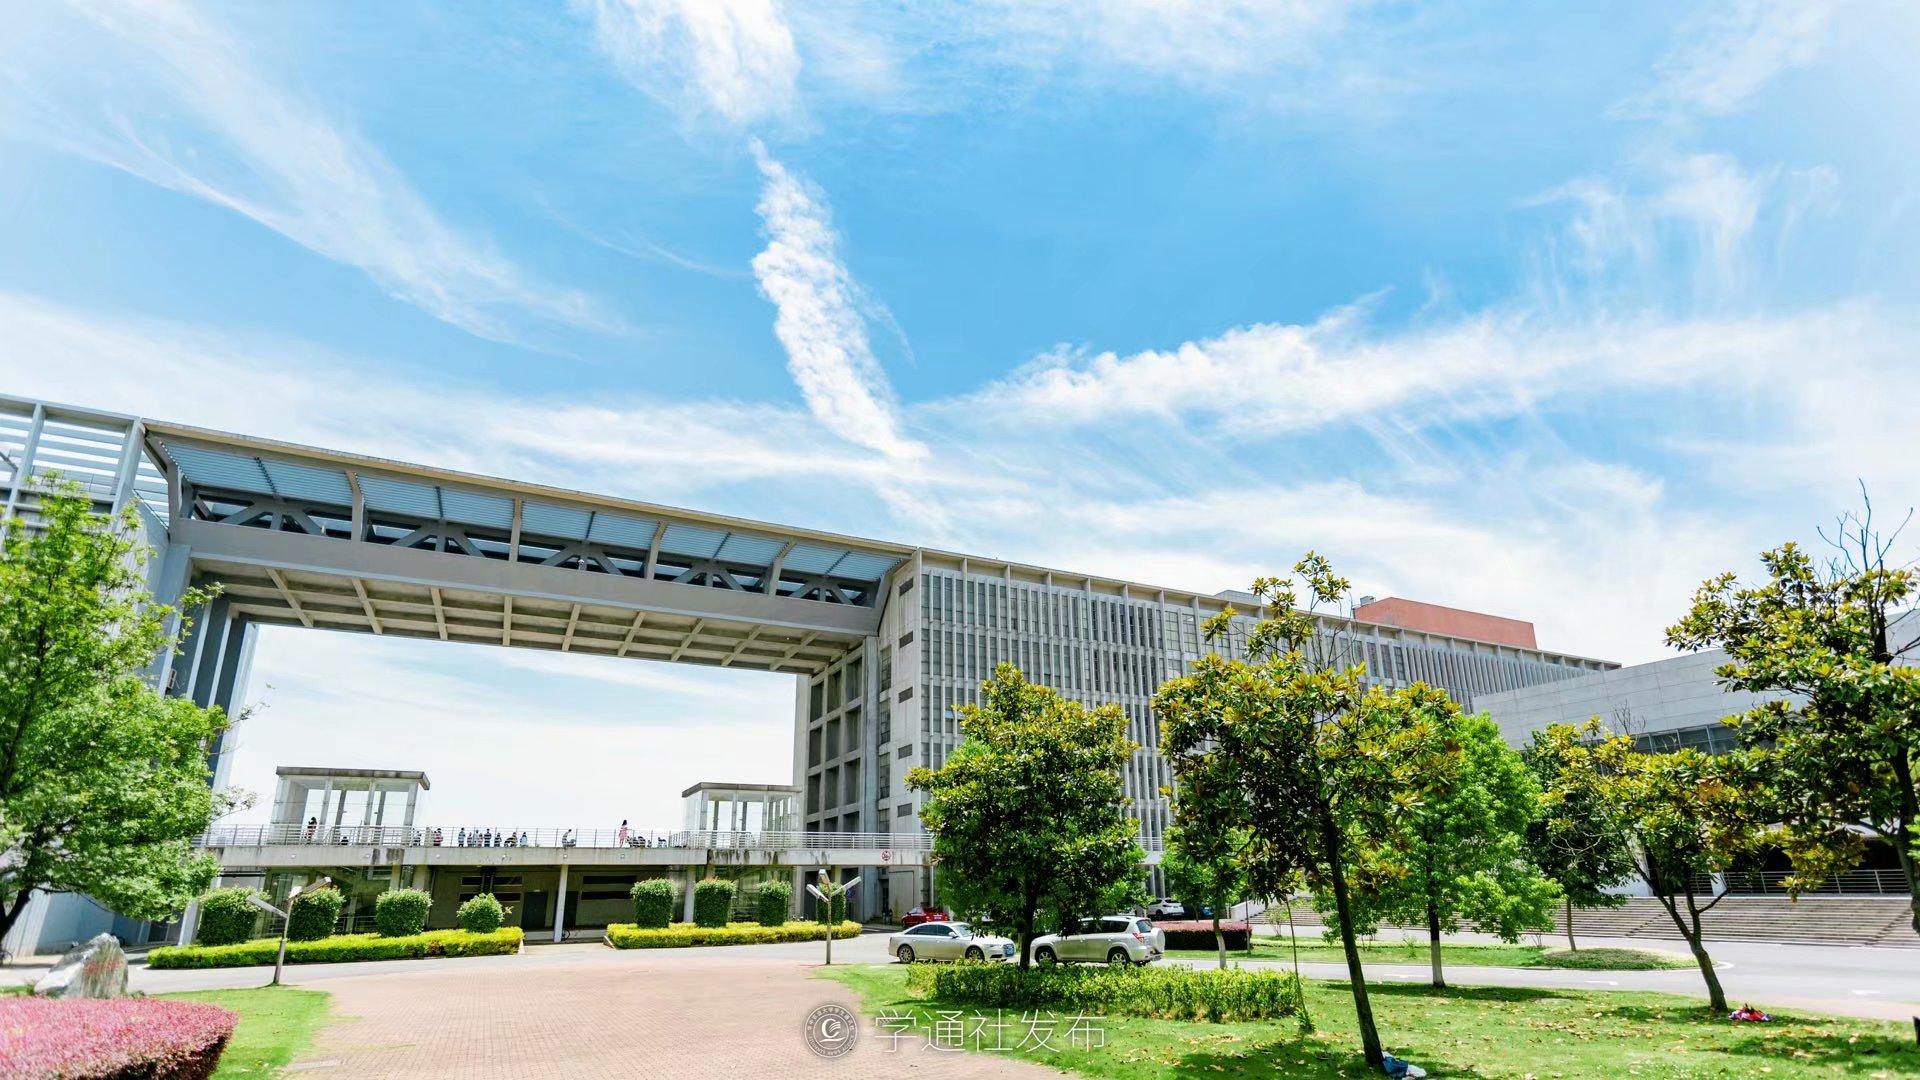 中国农业大学基建处 图片新闻 西区新楼